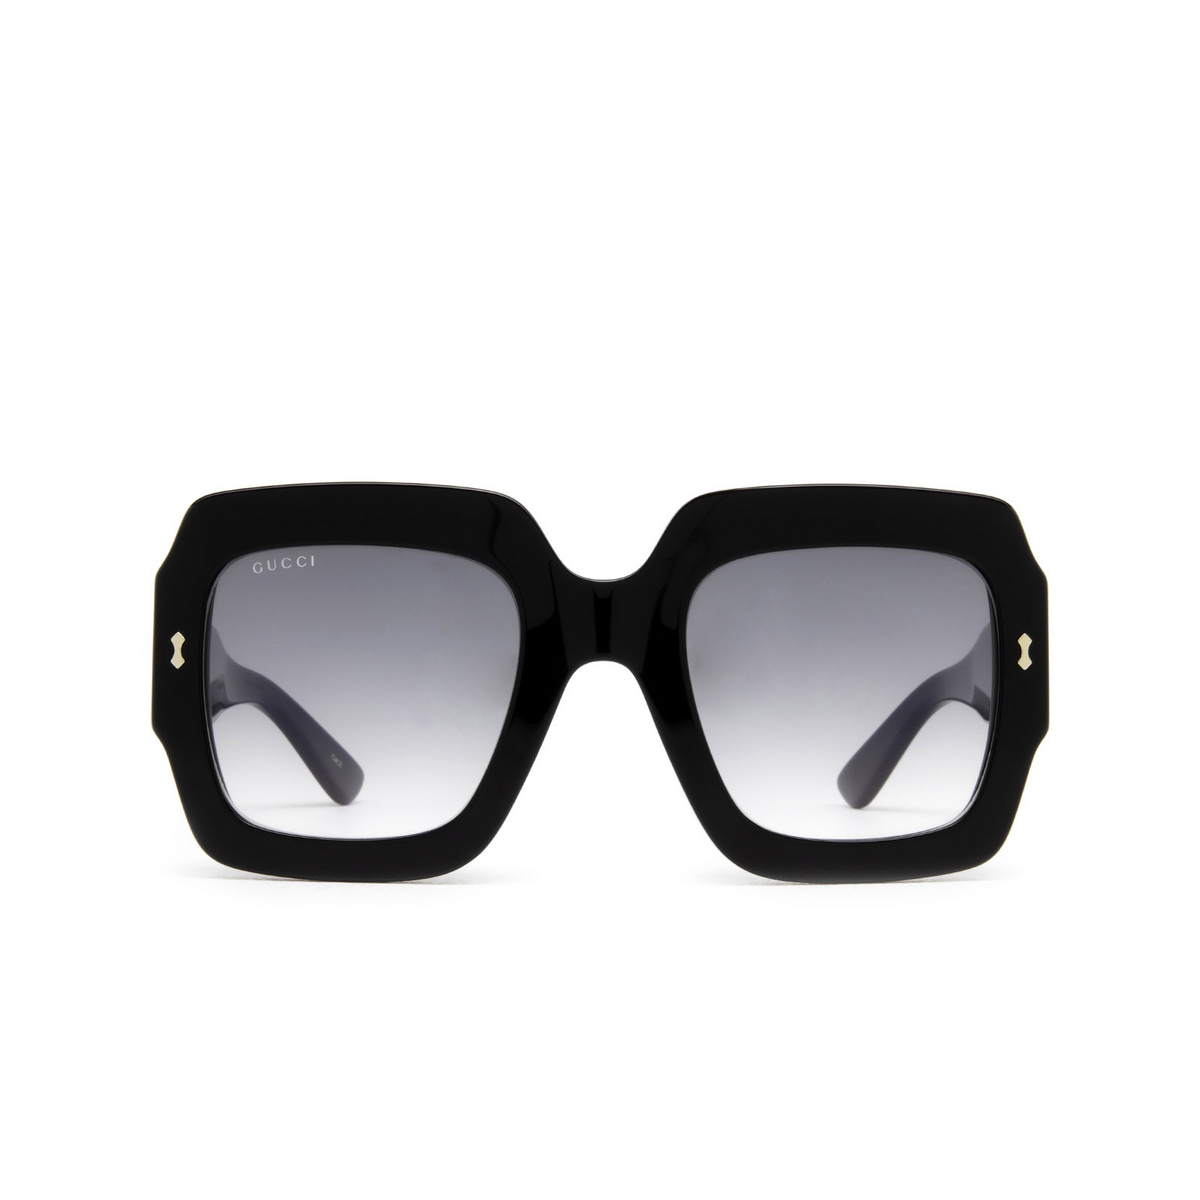 Gucci® Square Sunglasses: GG1111S color Black 001 - front view.